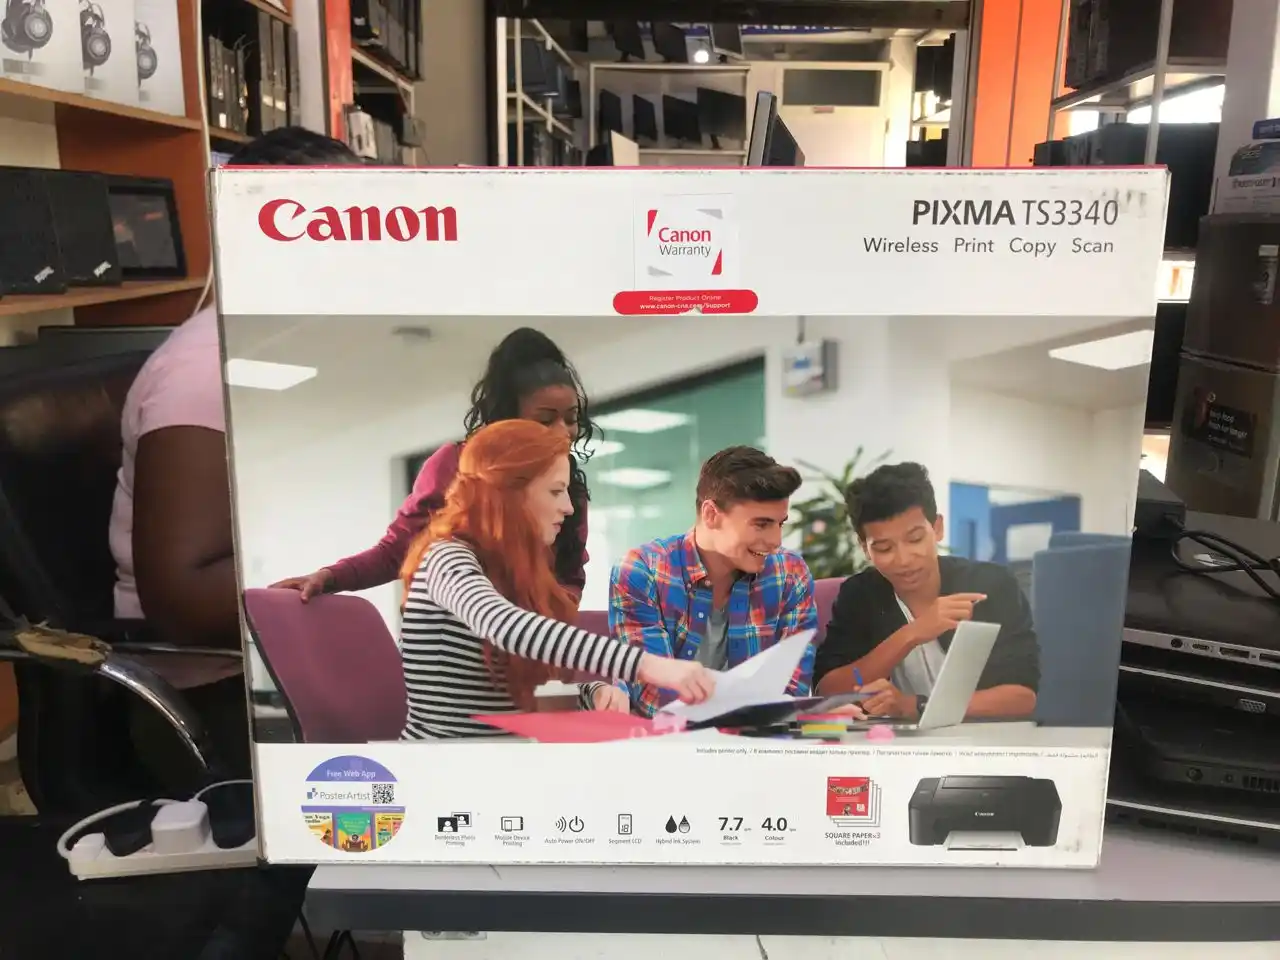 Canon Printer Pixma T 3340,Ina Wireless,Print, Copy And Scan